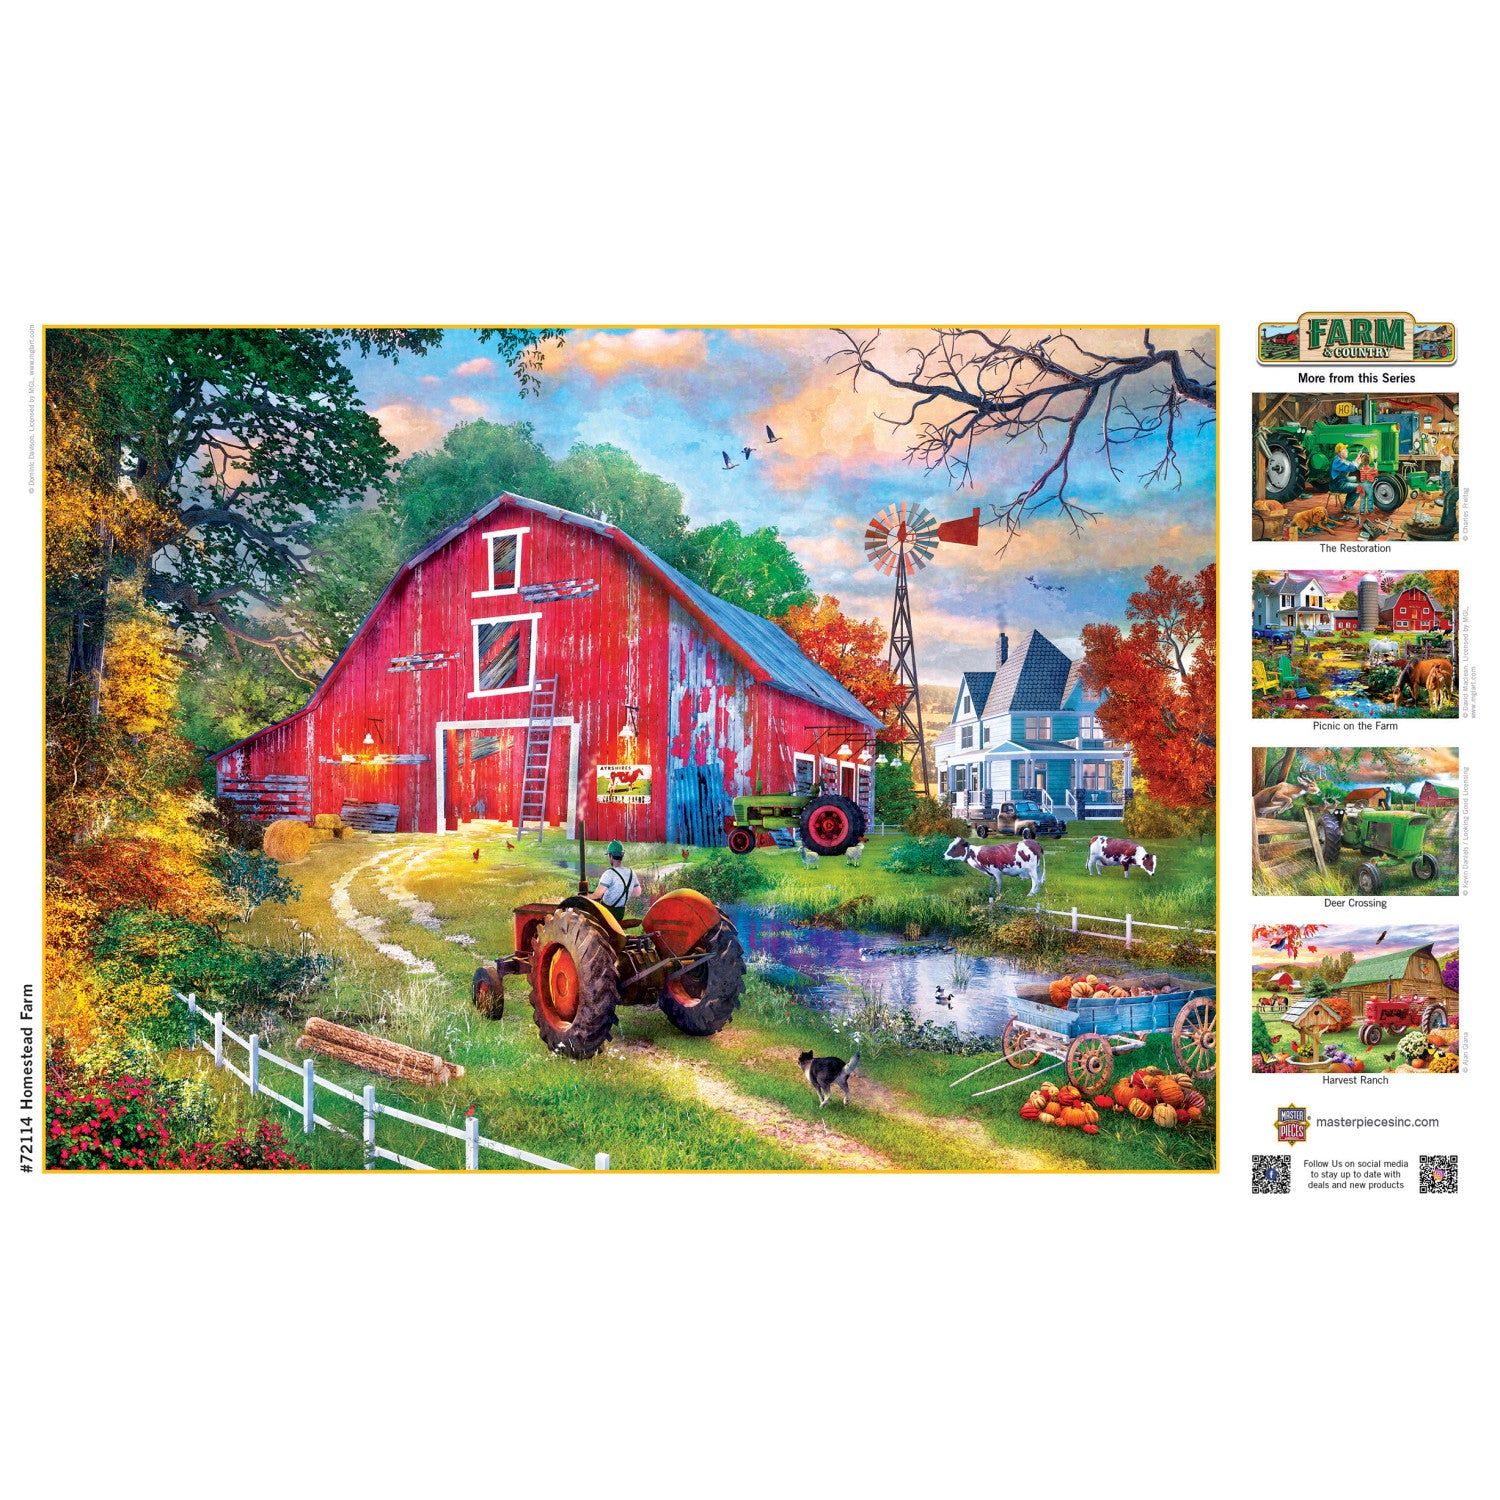 Farm & Country - Homestead Farm 1000 Piece Jigsaw Puzzle